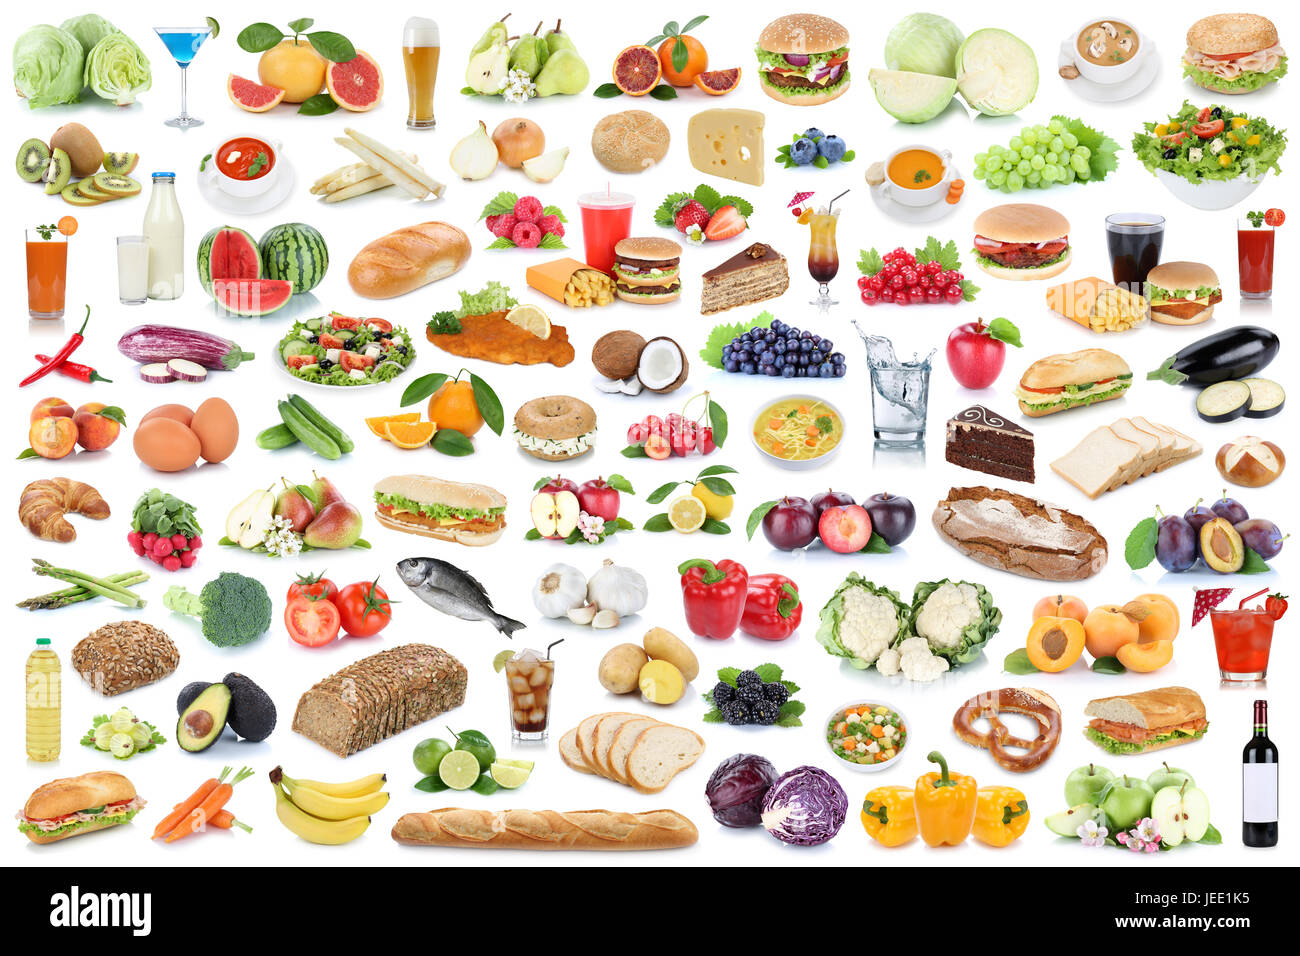 Essen und trinken Kollektion Collage gesund essen Obst und Gemüse Obst Getränke isoliert auf weißem Hintergrund Stockfoto